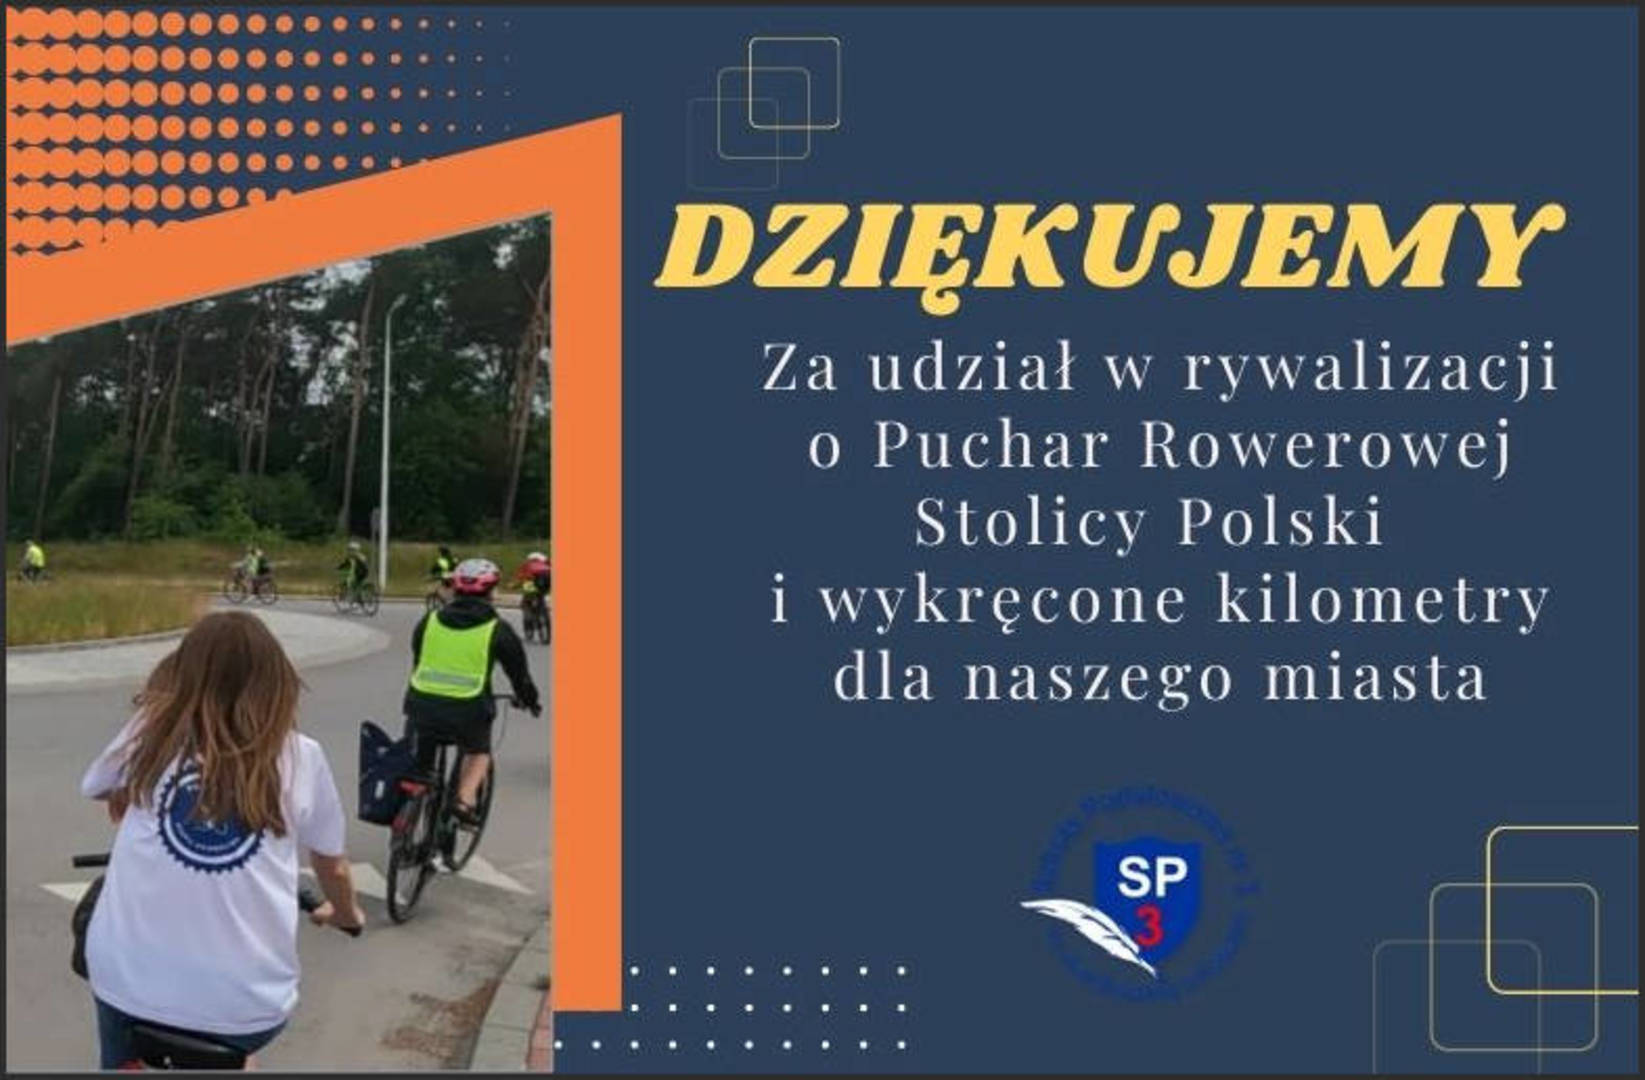 Rowerowa Stolica Polski - podziękowanie